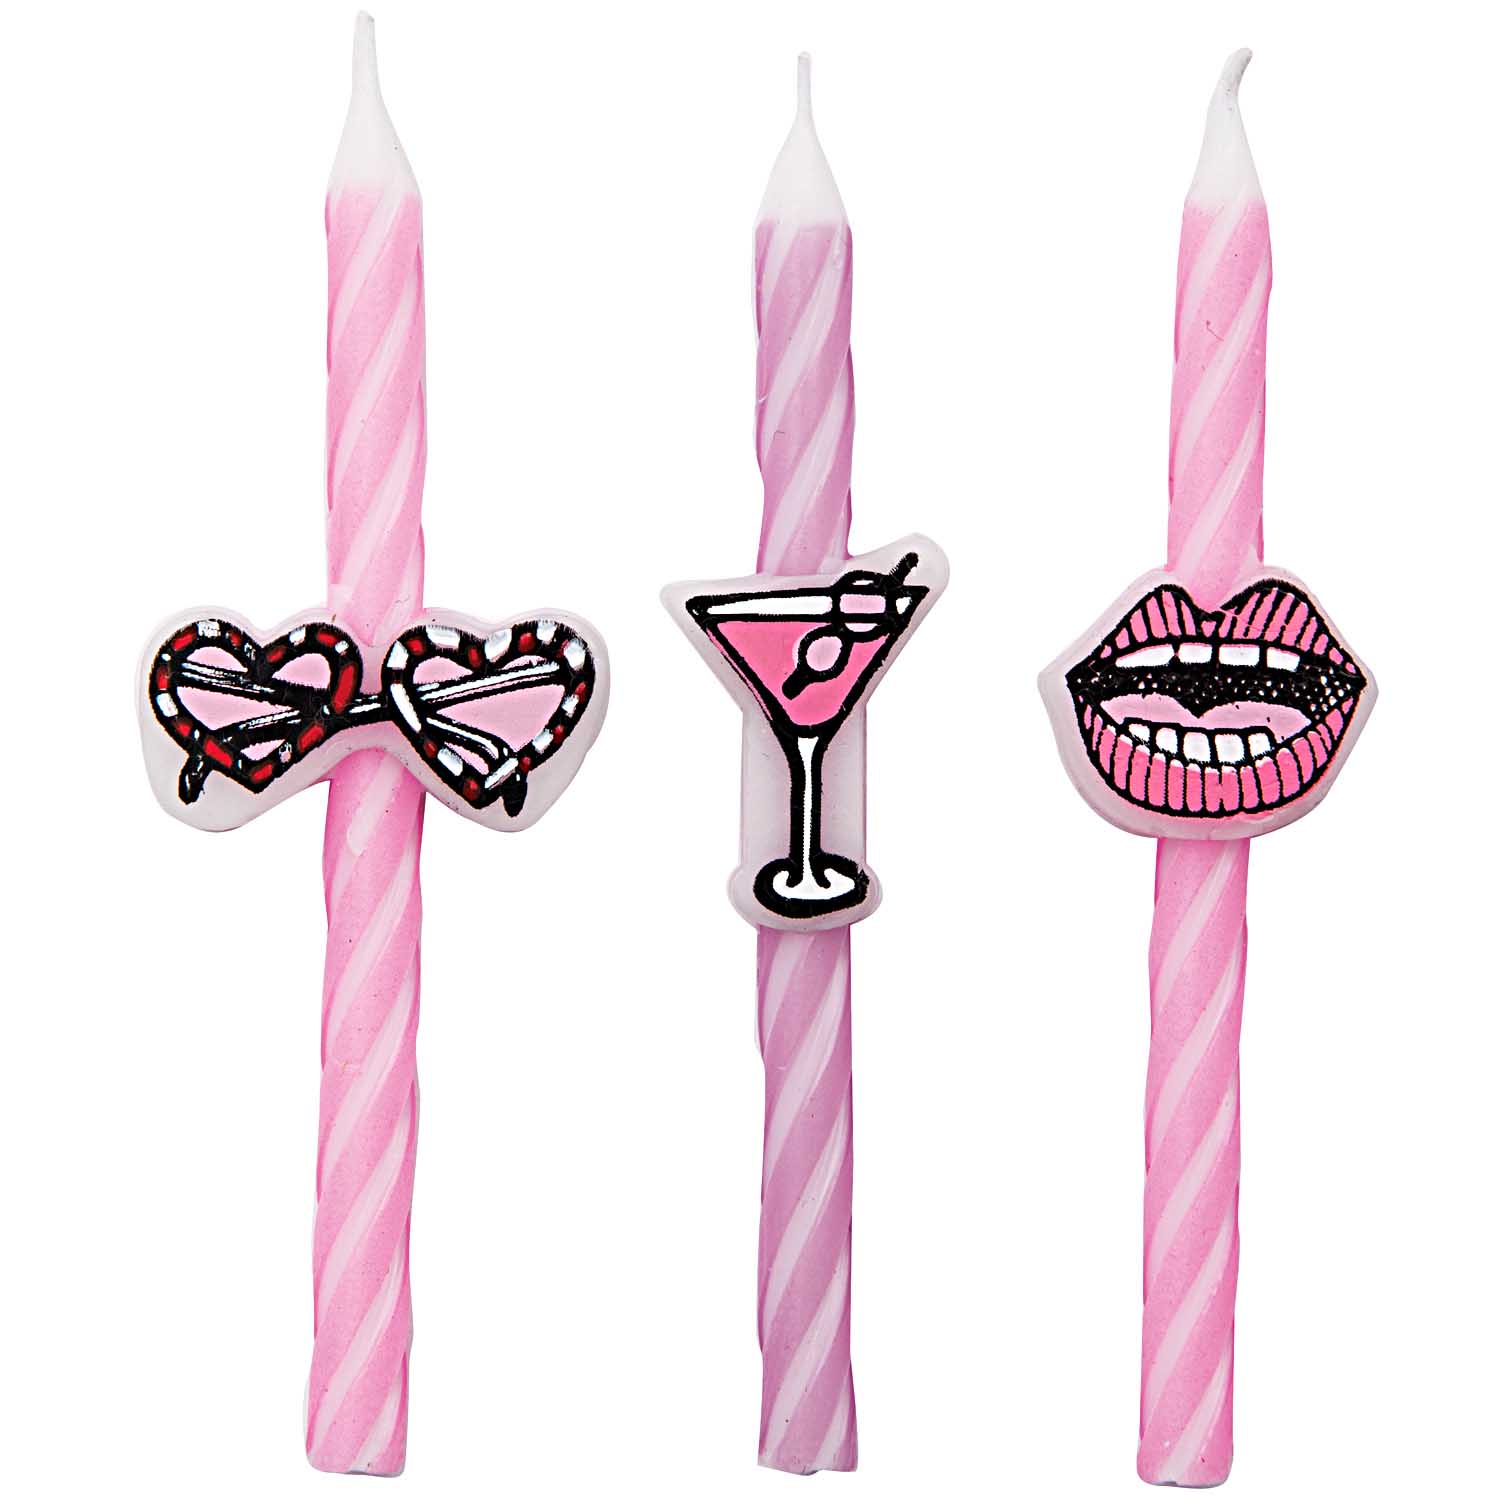 Bougie anniversaire rose Girl Party LOT DE 3